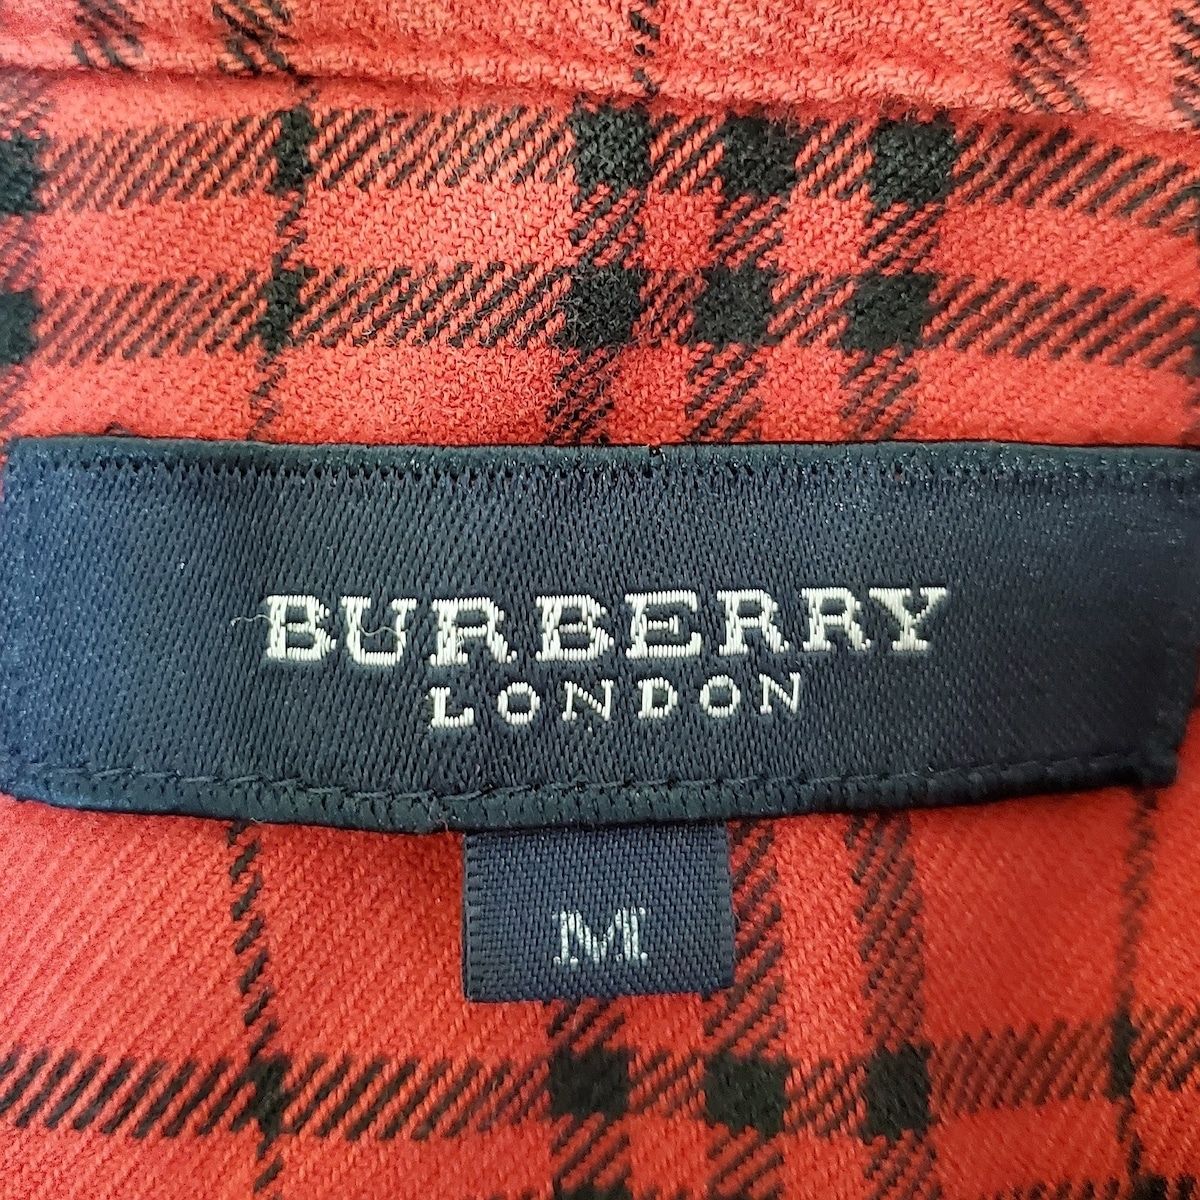 Burberry LONDON(バーバリーロンドン) メンズセットアップ メンズ - レッド×黒 チェック柄/ウエストゴム/パジャマ 綿